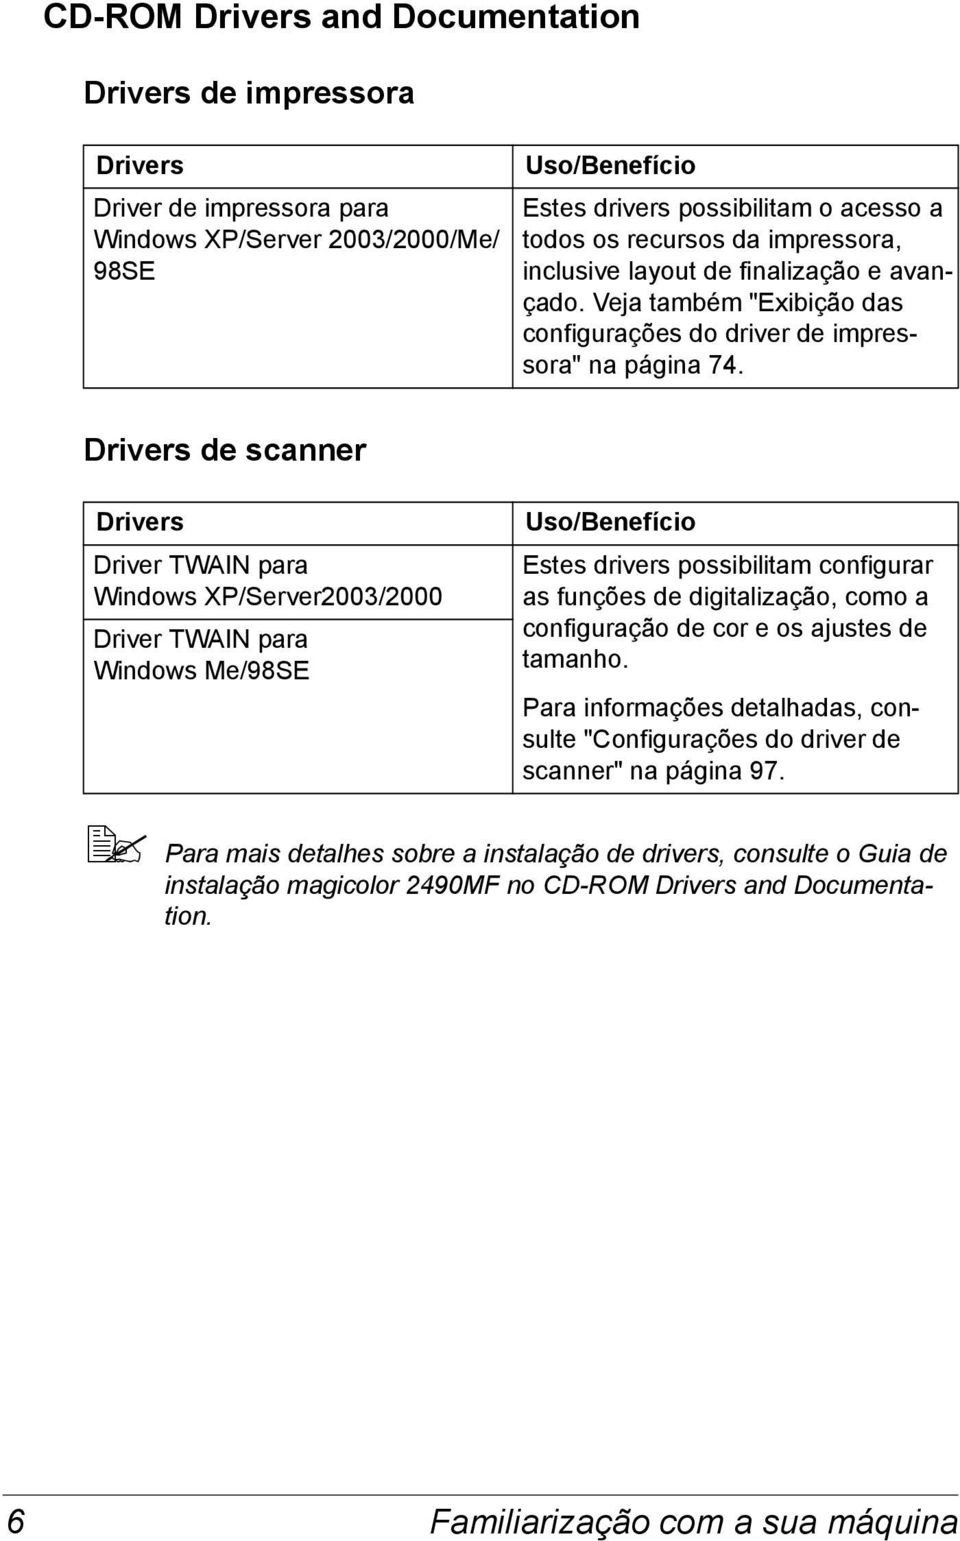 Drivers de scanner Drivers Driver TWAIN para Windows XP/Server2003/2000 Driver TWAIN para Windows Me/98SE Uso/Benefício Estes drivers possibilitam configurar as funções de digitalização, como a